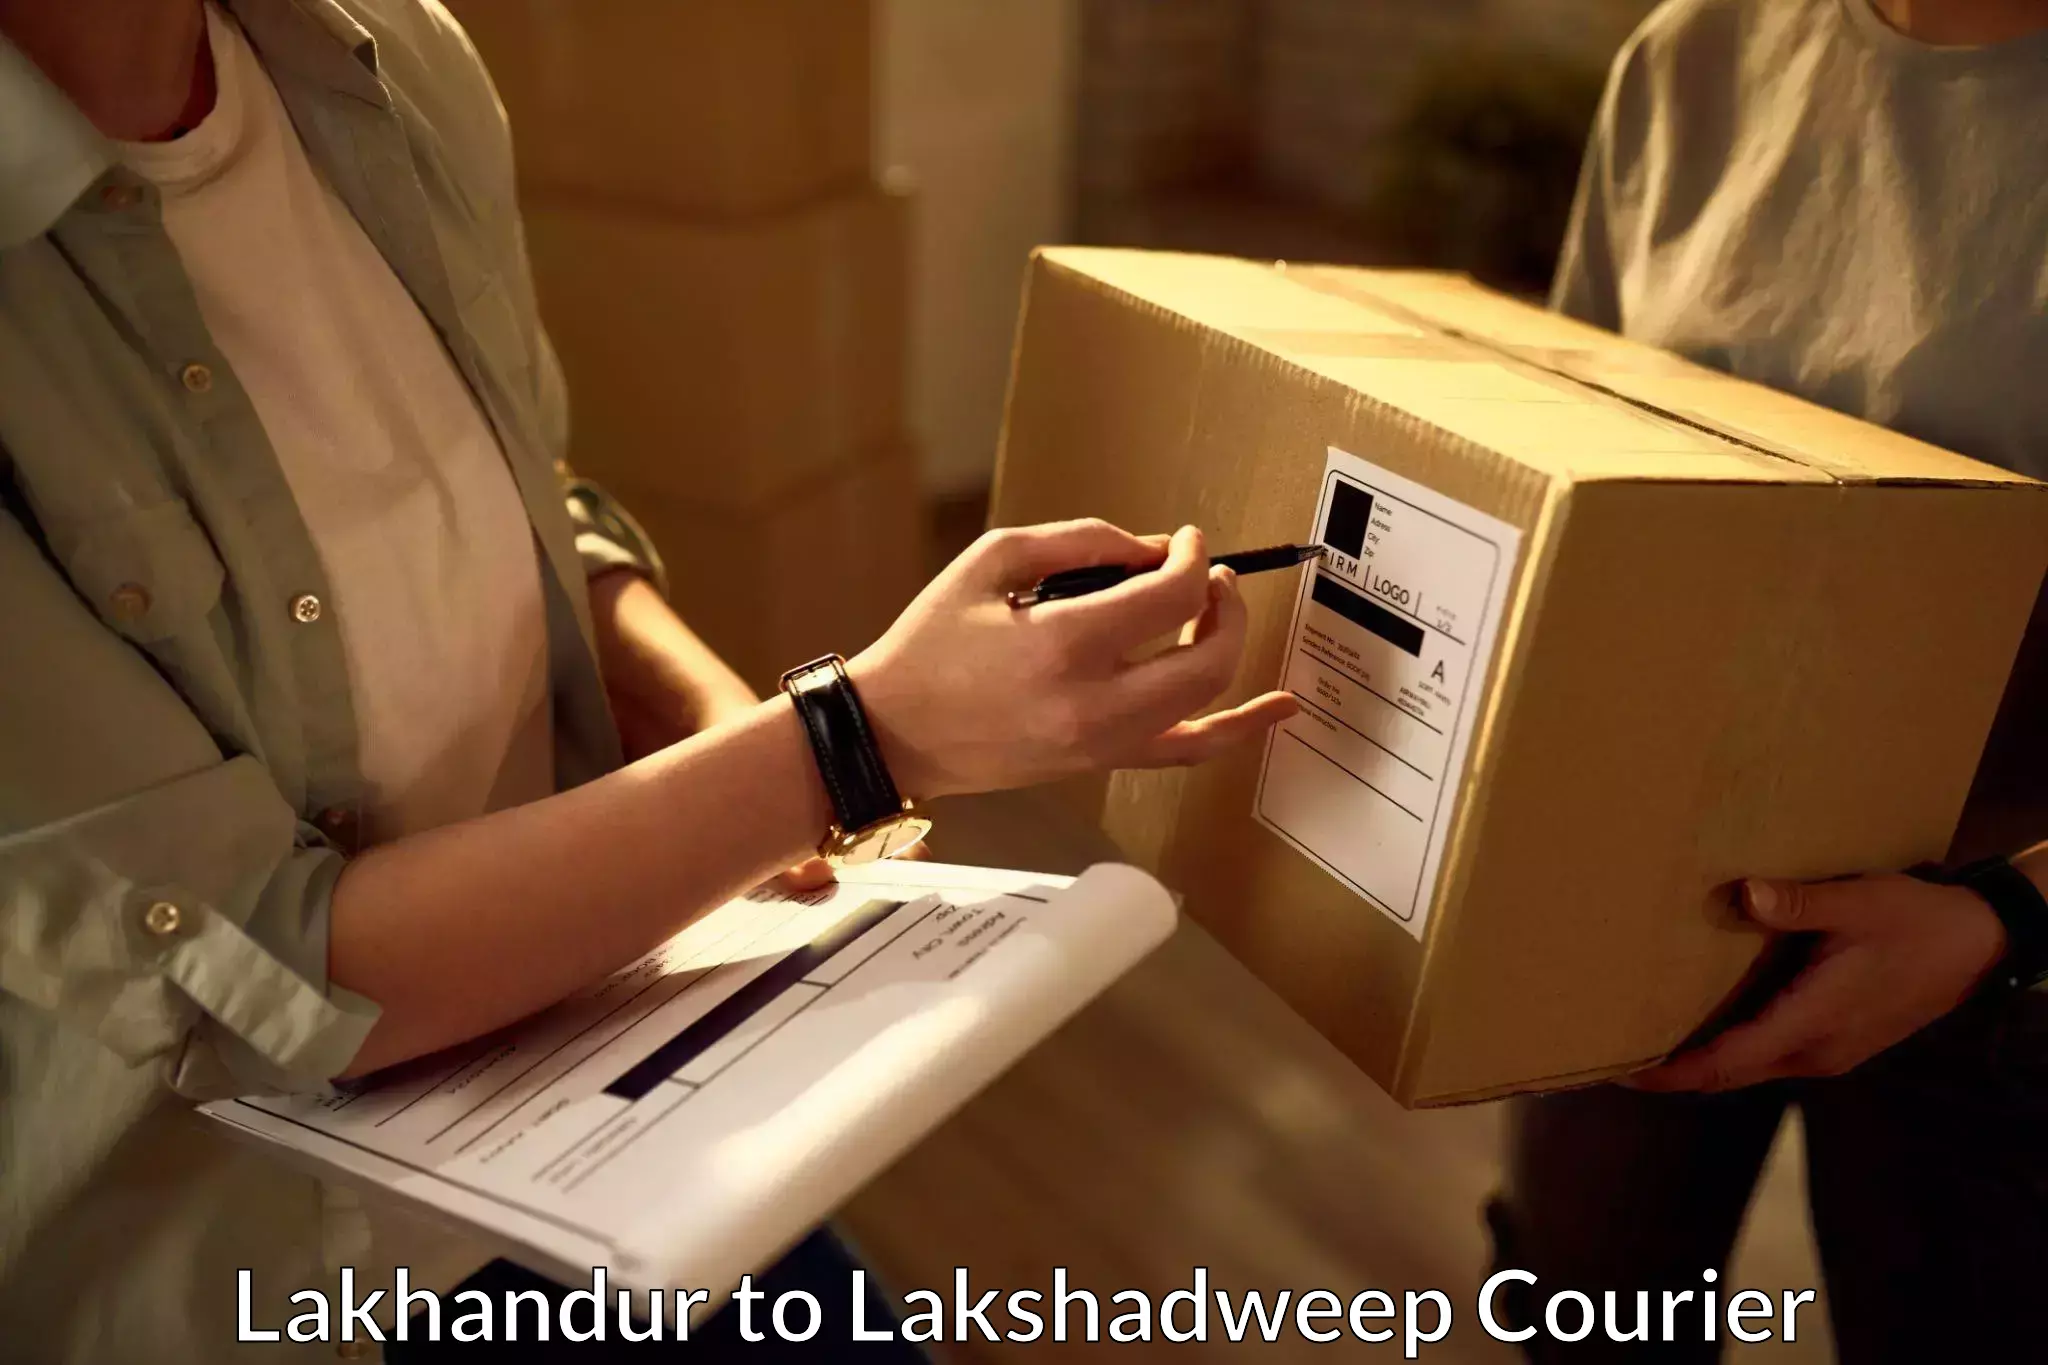 Door-to-door freight service Lakhandur to Lakshadweep